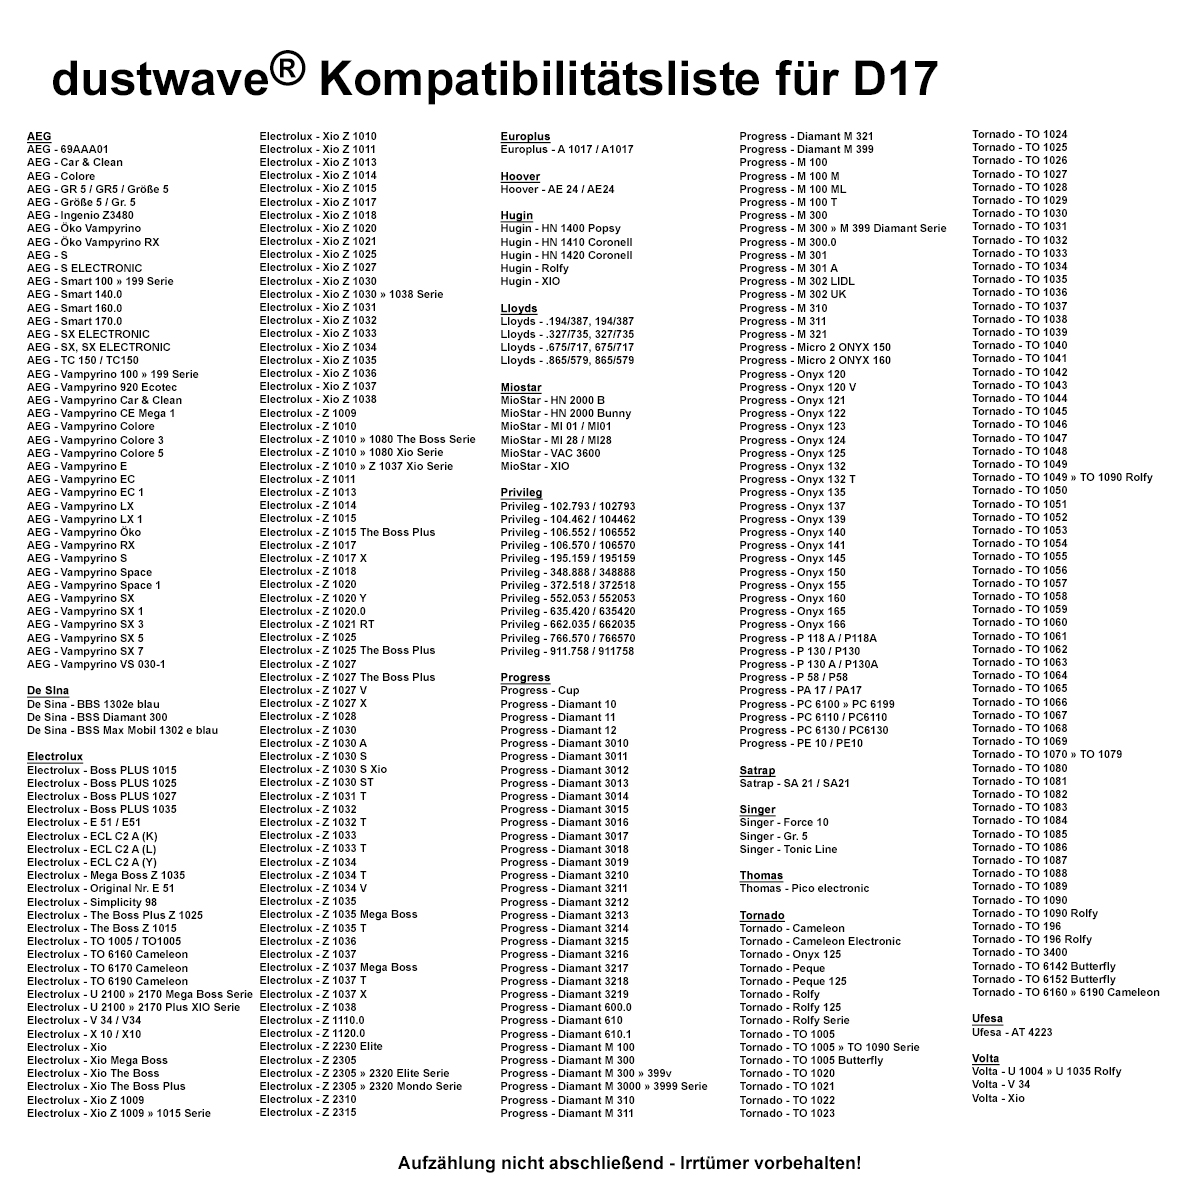 Dustwave® Premium 20 Staubsaugerbeutel für AEG Smart 140.0 - hocheffizient mit Hygieneverschluss - Made in Germany